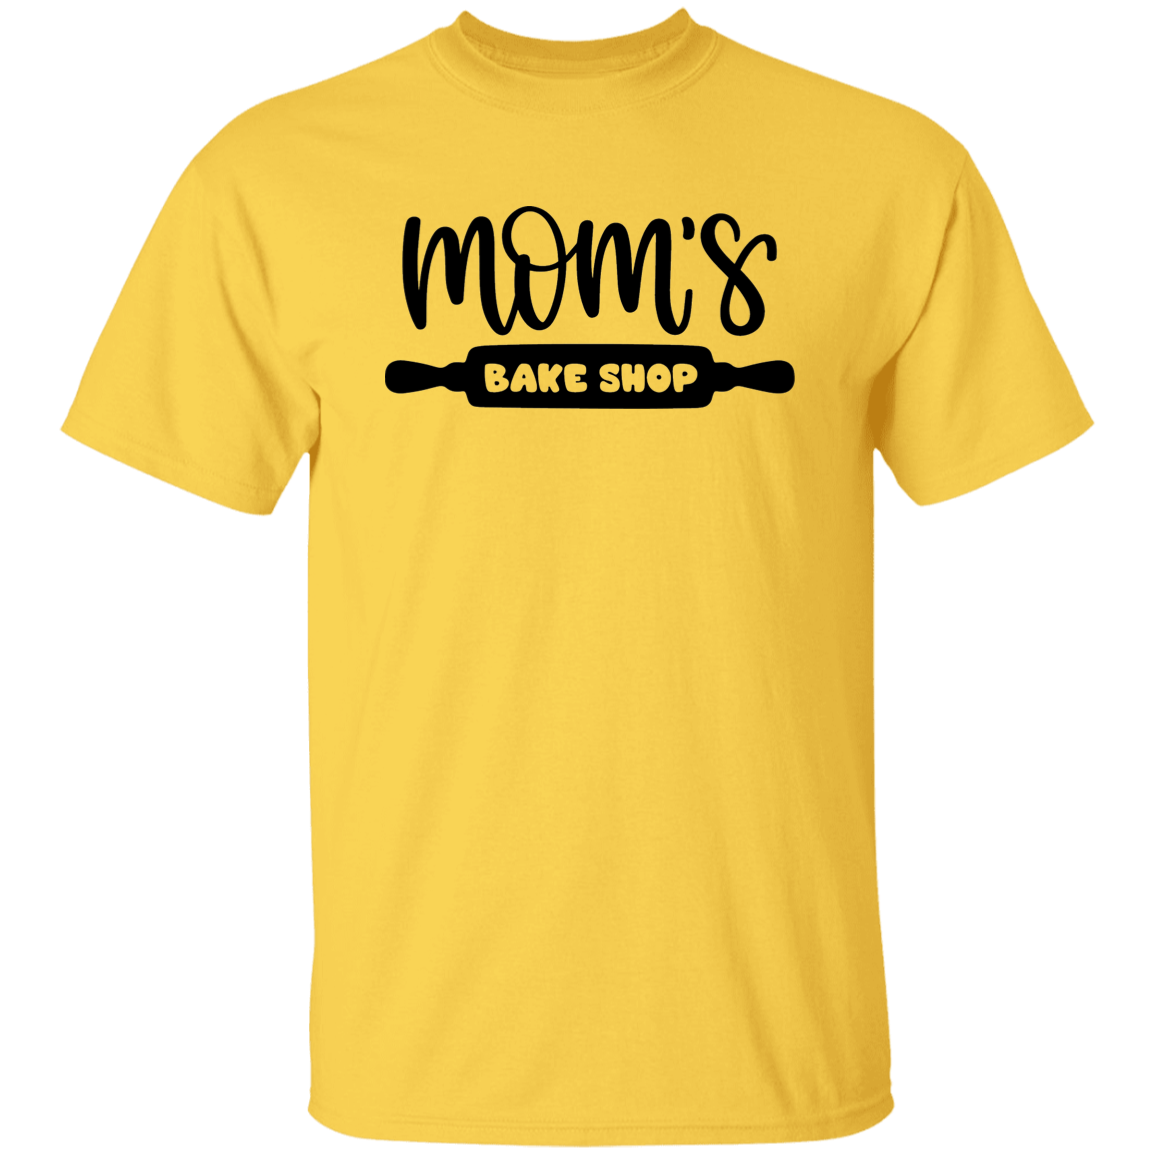 Bake 5.3 oz. T-Shirt